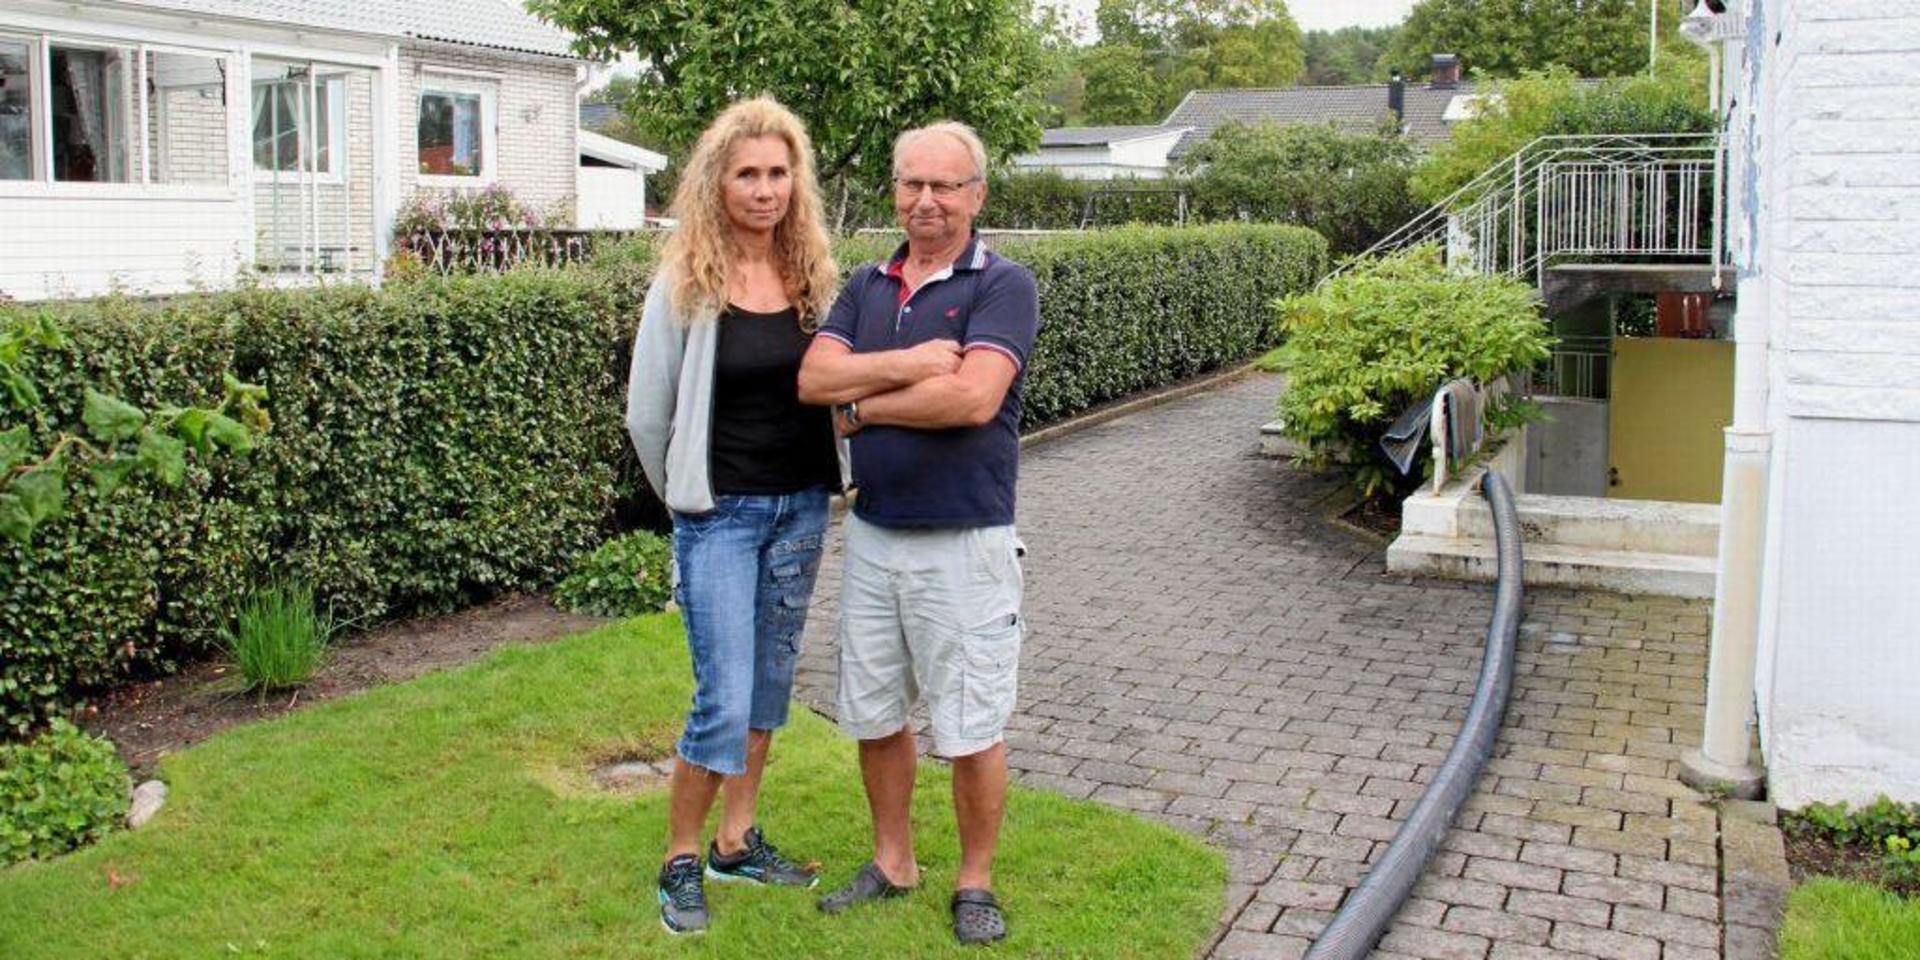 Carina Jansson Erikssons pappas källare drabbades av översvämning. Det gjorde även Lennart Johanssons källare. Han bor i huset snett bakom.